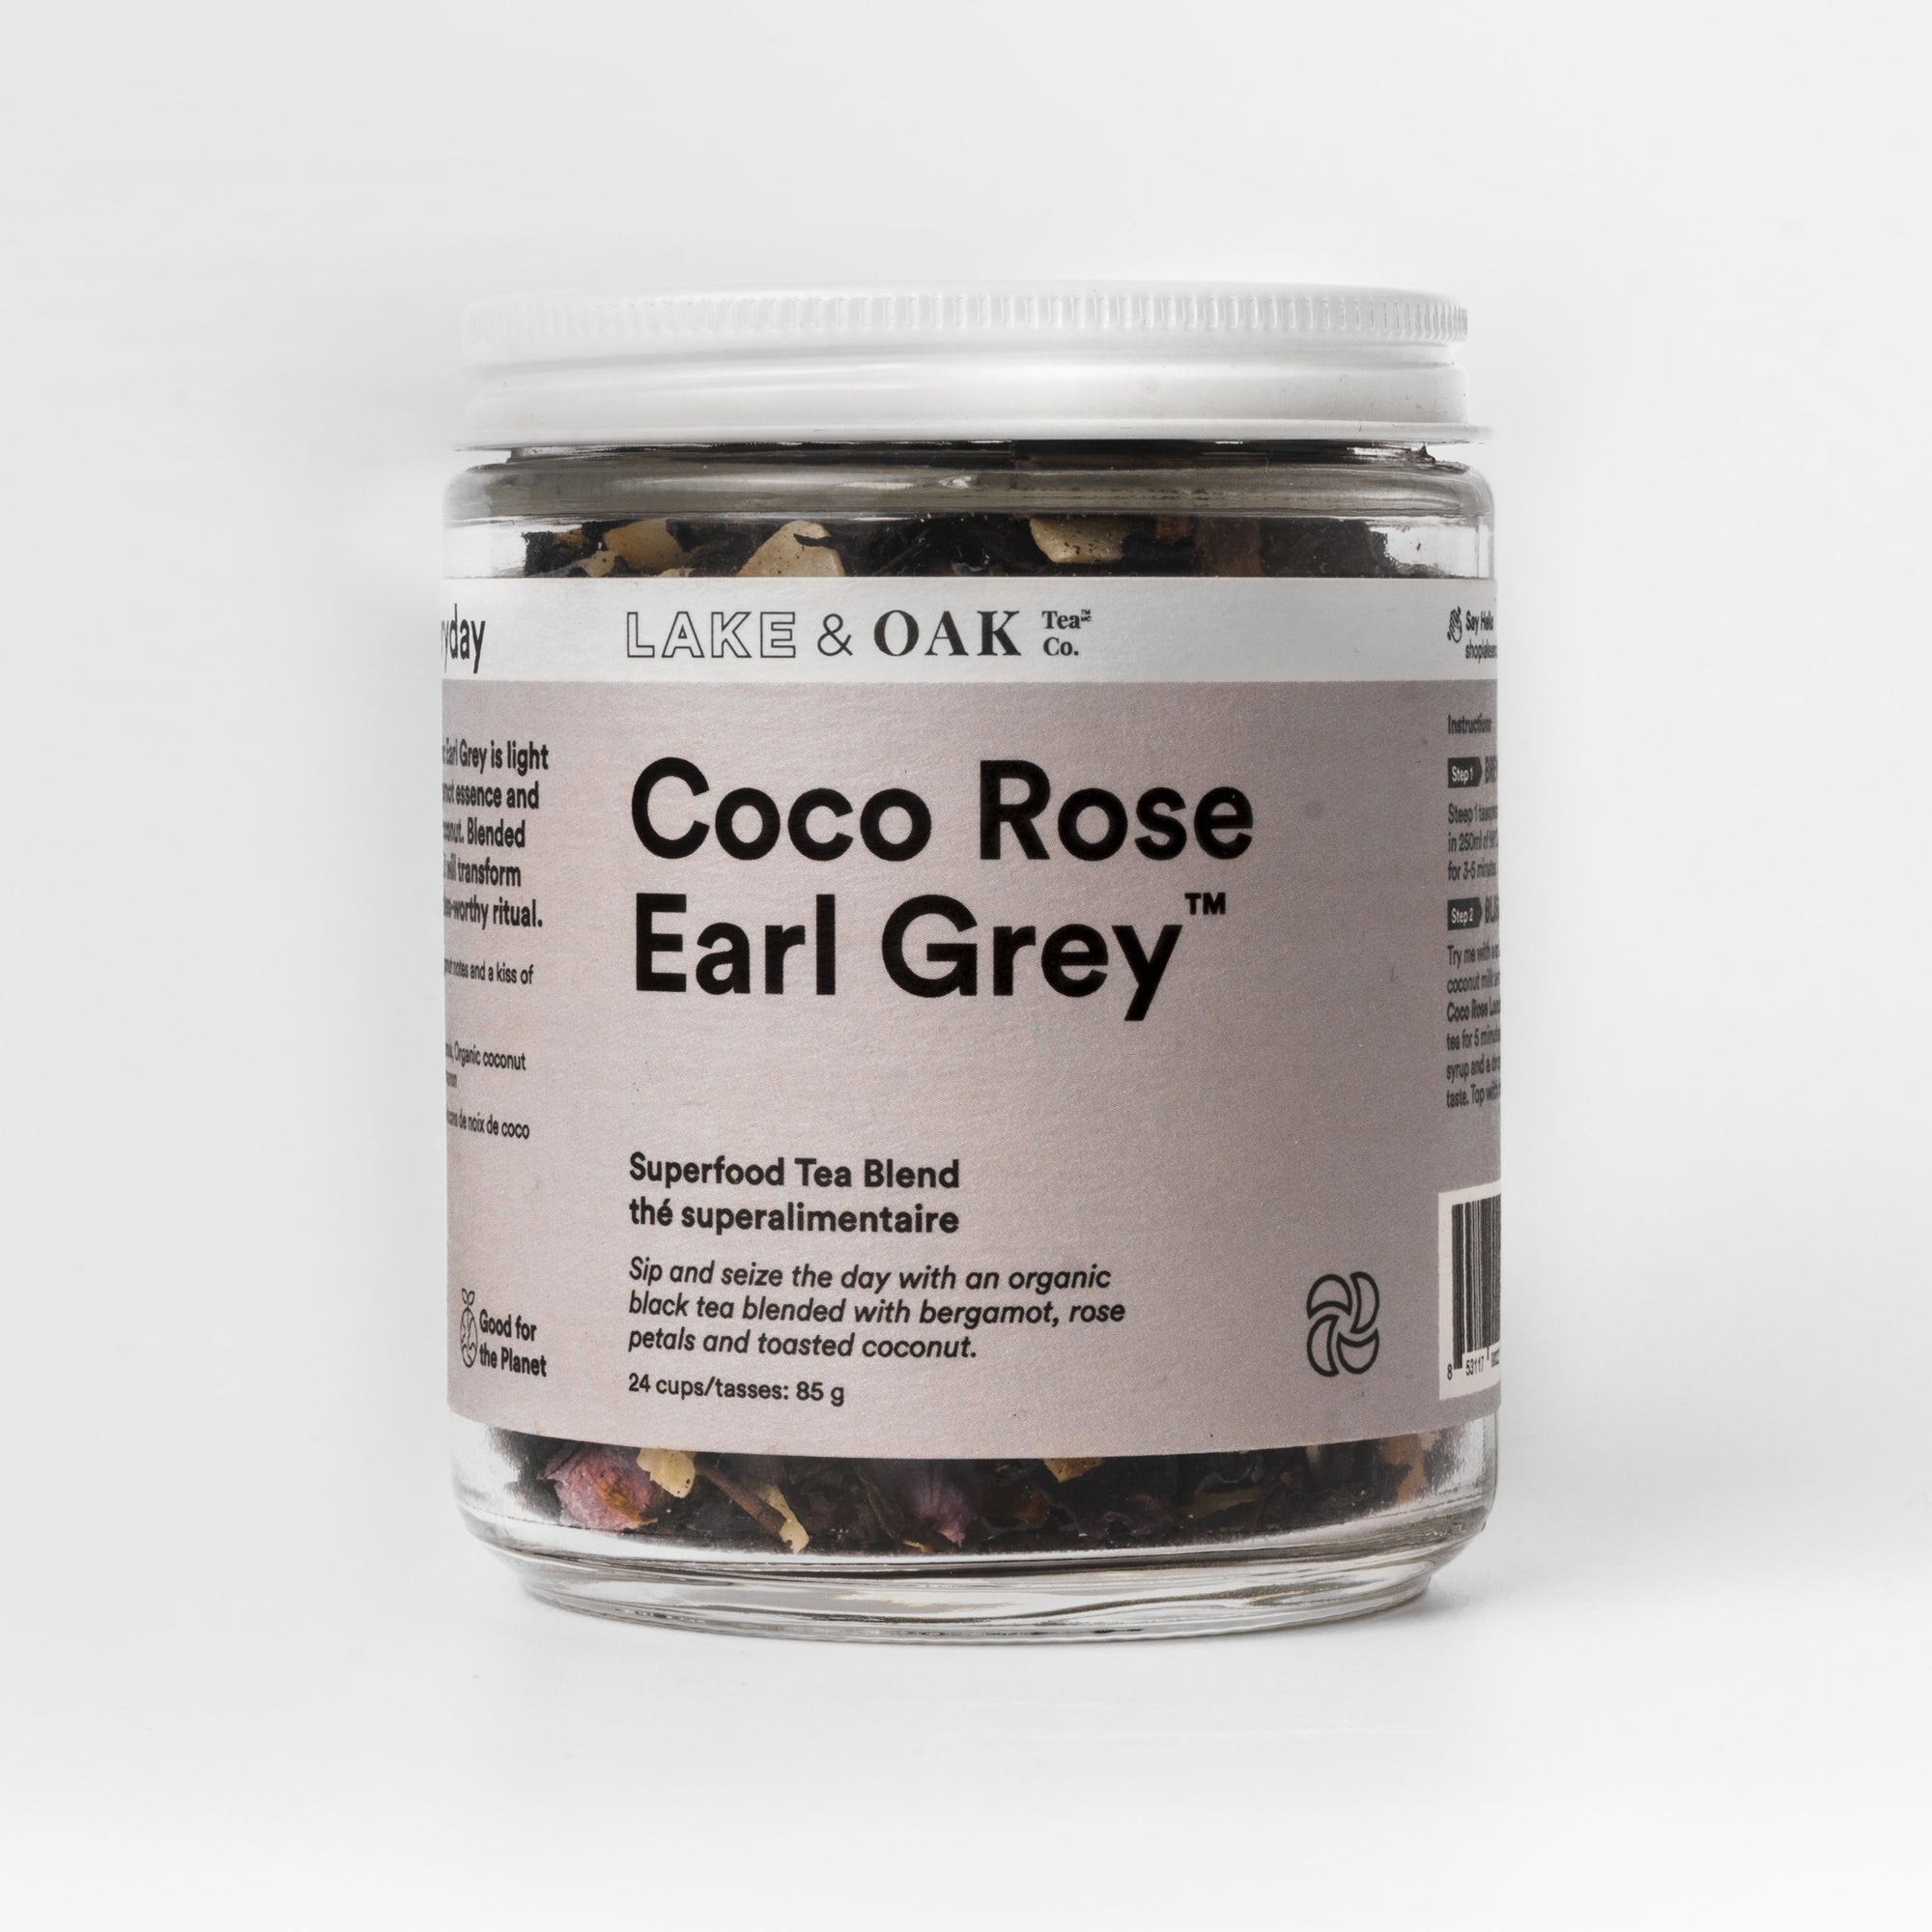 Coco Rose Earl Grey | Lake & Oak Tea Co. | The Lake